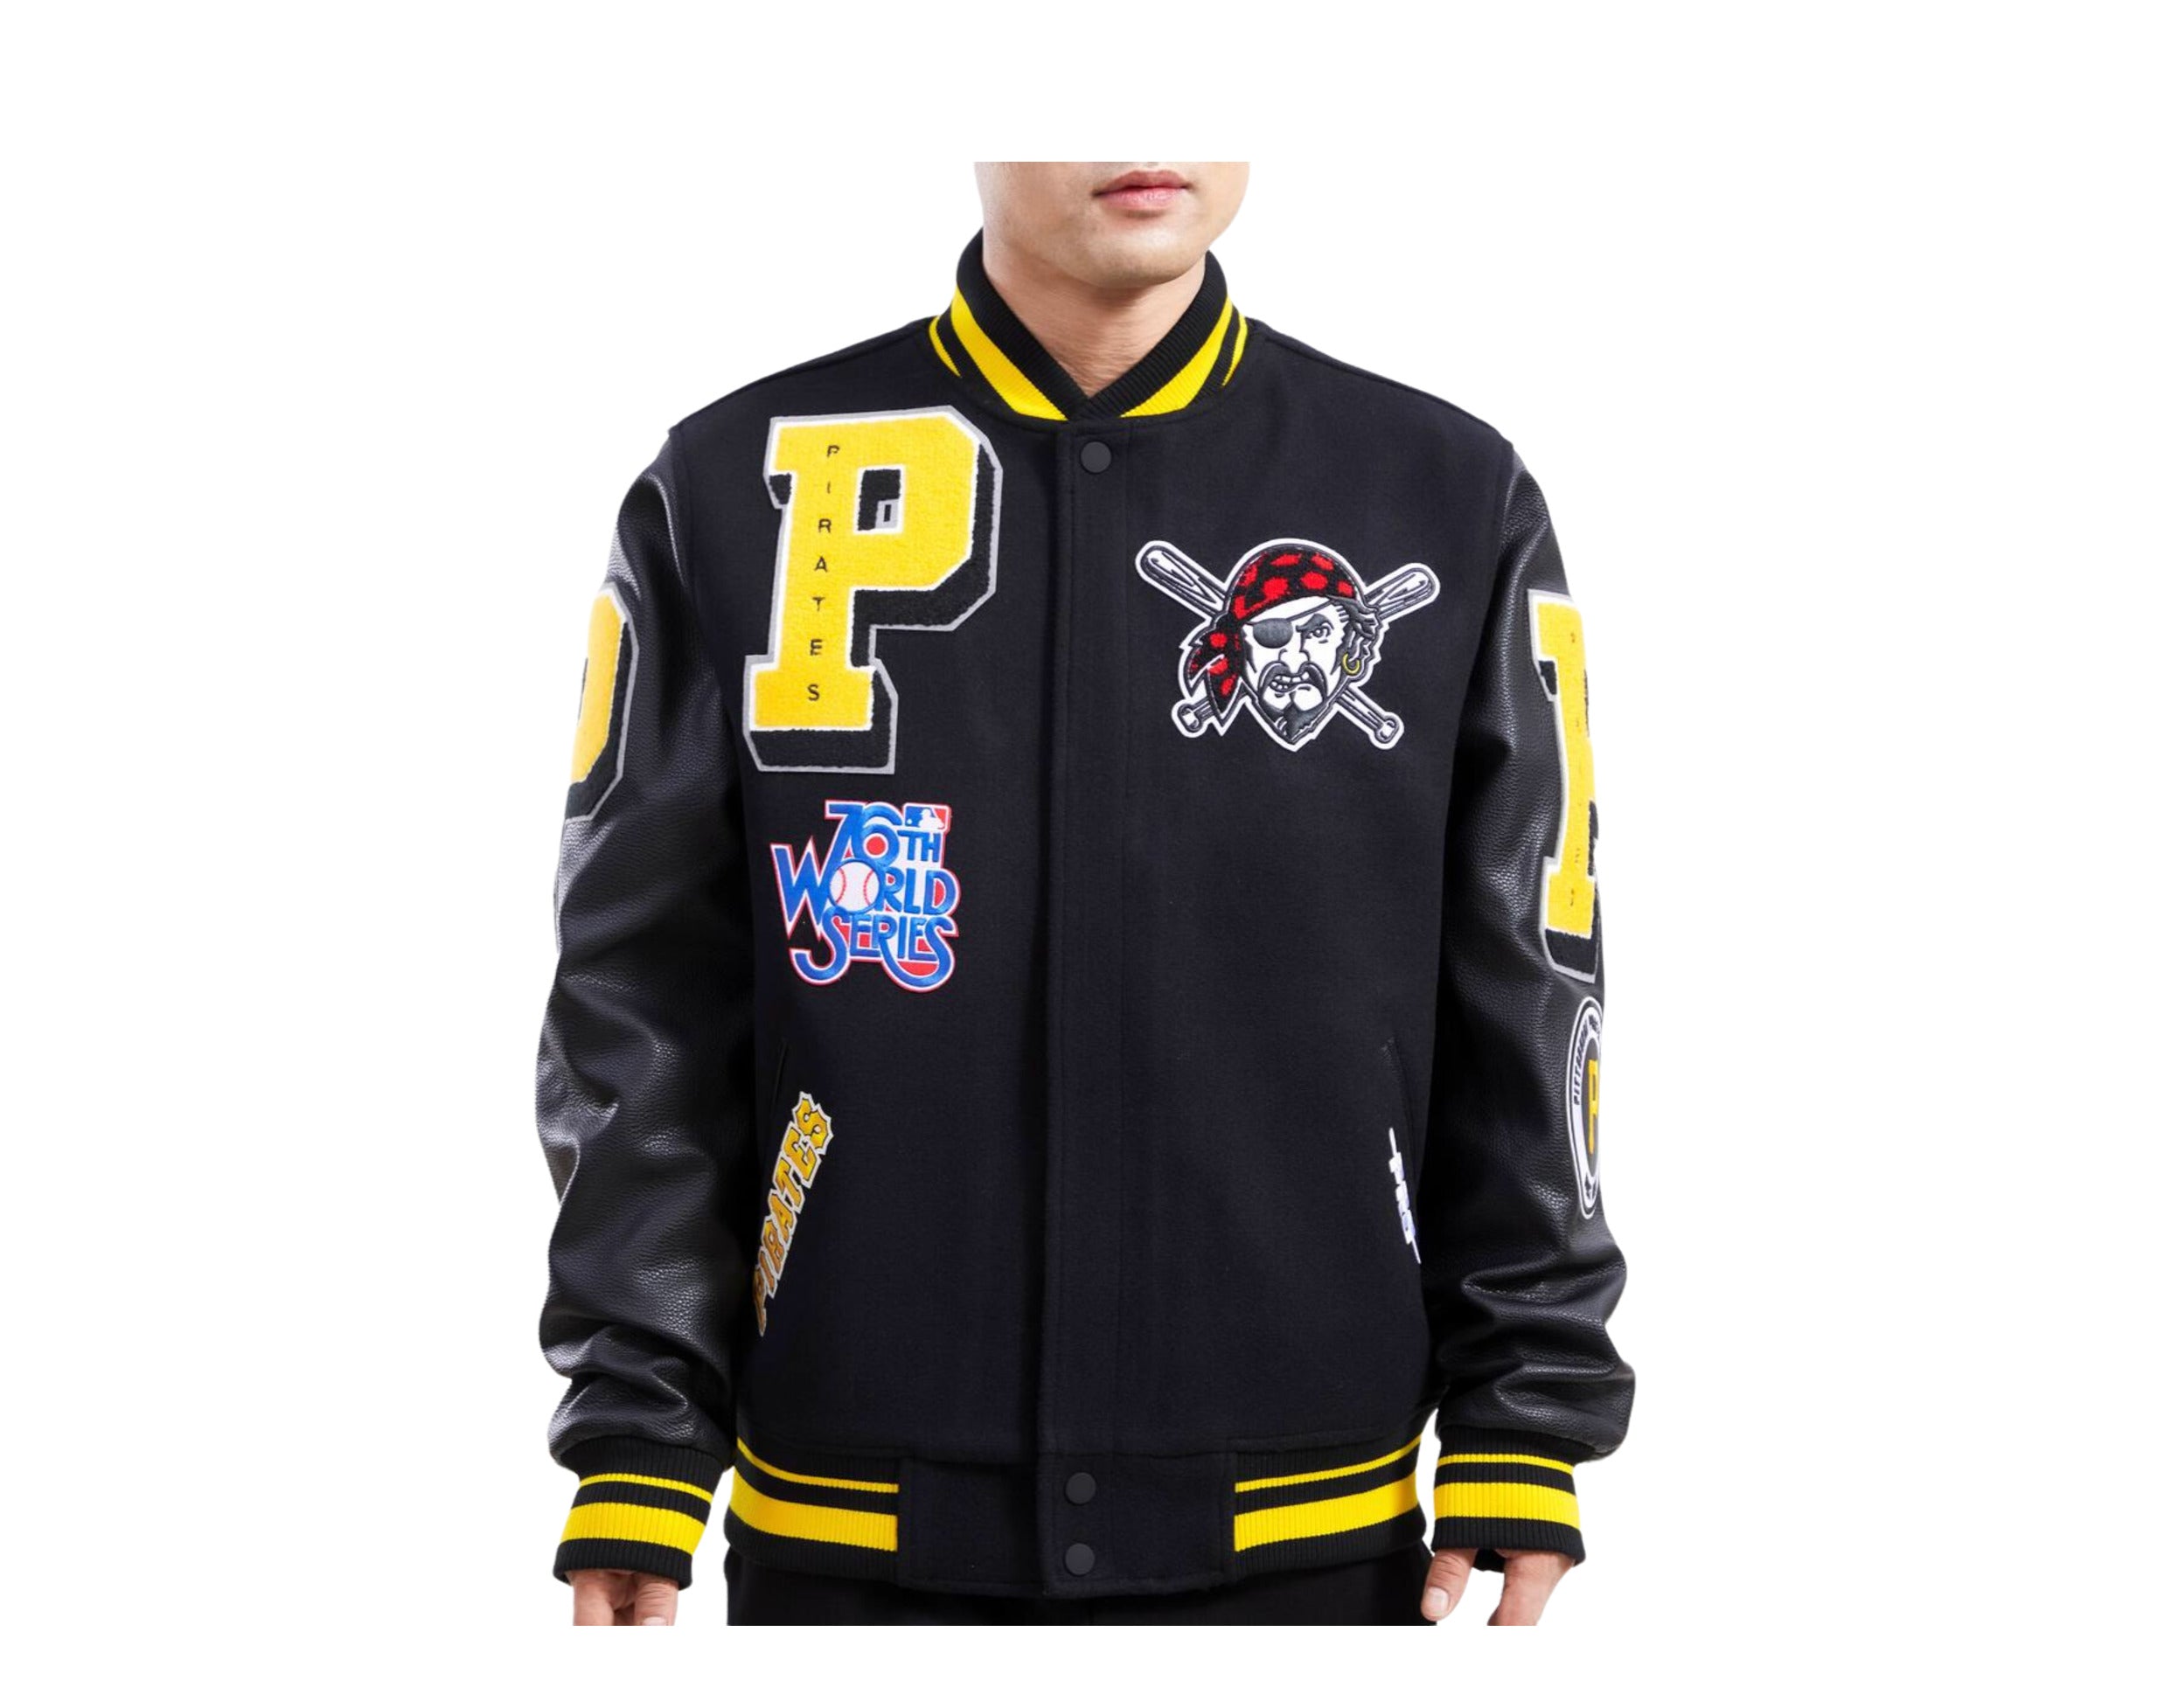 Buy Pro Club Men's Varsity Fleece Baseball Jacket, Black/Black, Medium at